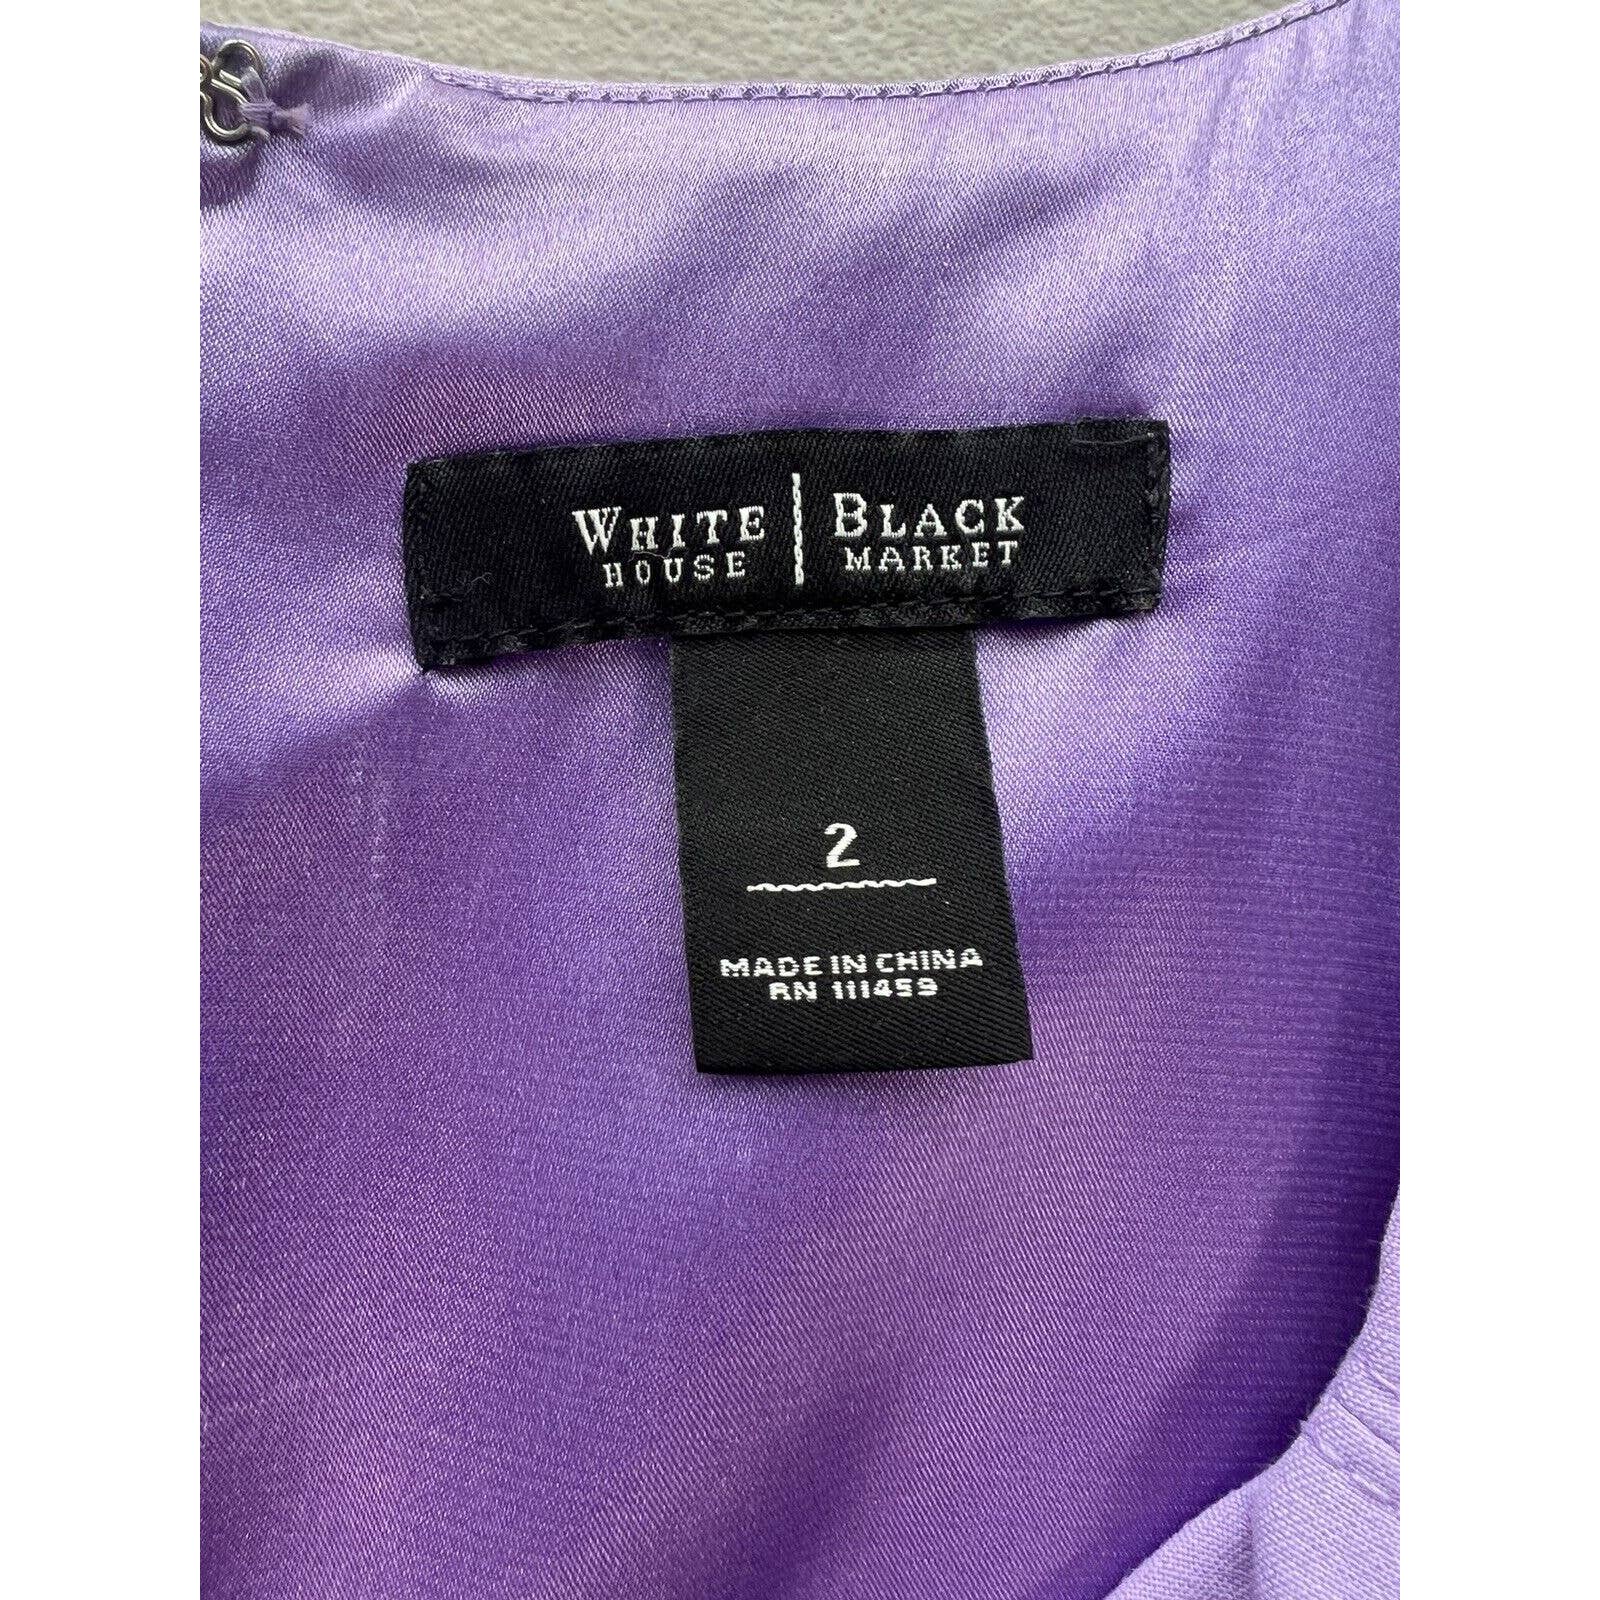 White House Black Market Dress Womens 2 Lavender Sleeveless Scoop Neck